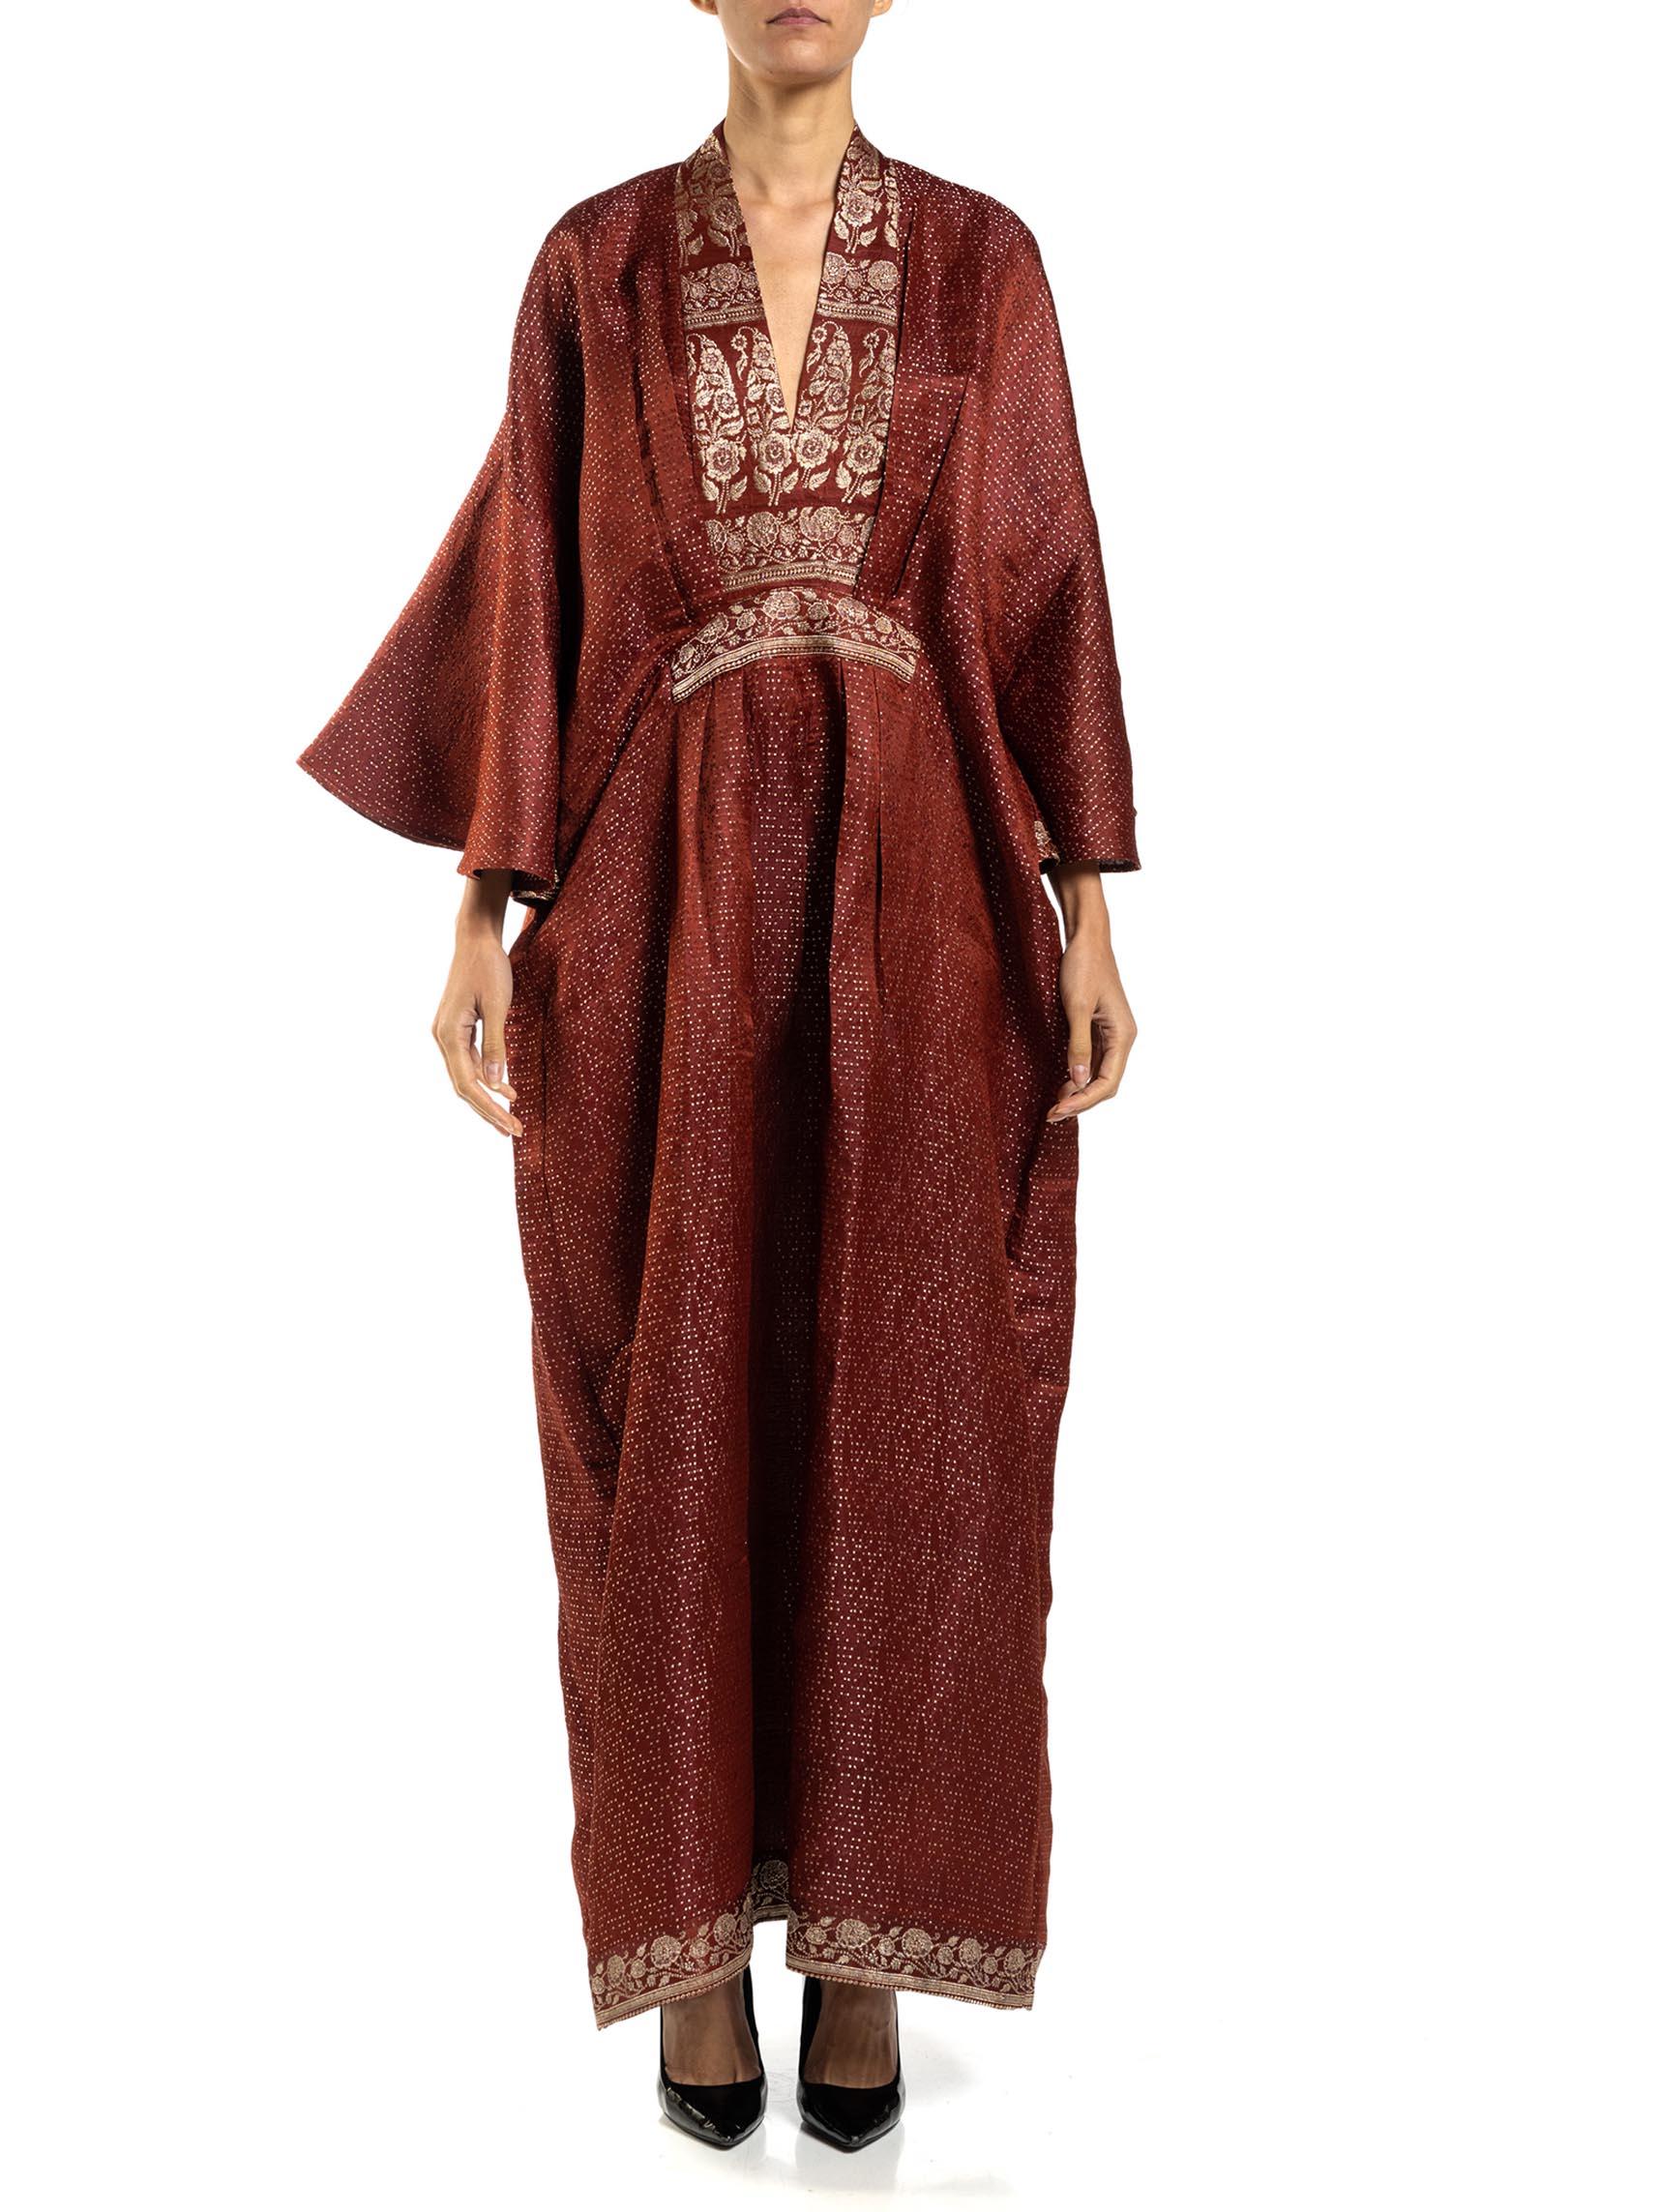 De l'époque victorienne aux années 1950, 60 et 70, la mode occidentale a utilisé la soie des saris indiens dans ses créations. Lorsque nous avons discuté avec le directeur de notre usine en Inde de l'approvisionnement en lamé métallique véritable,